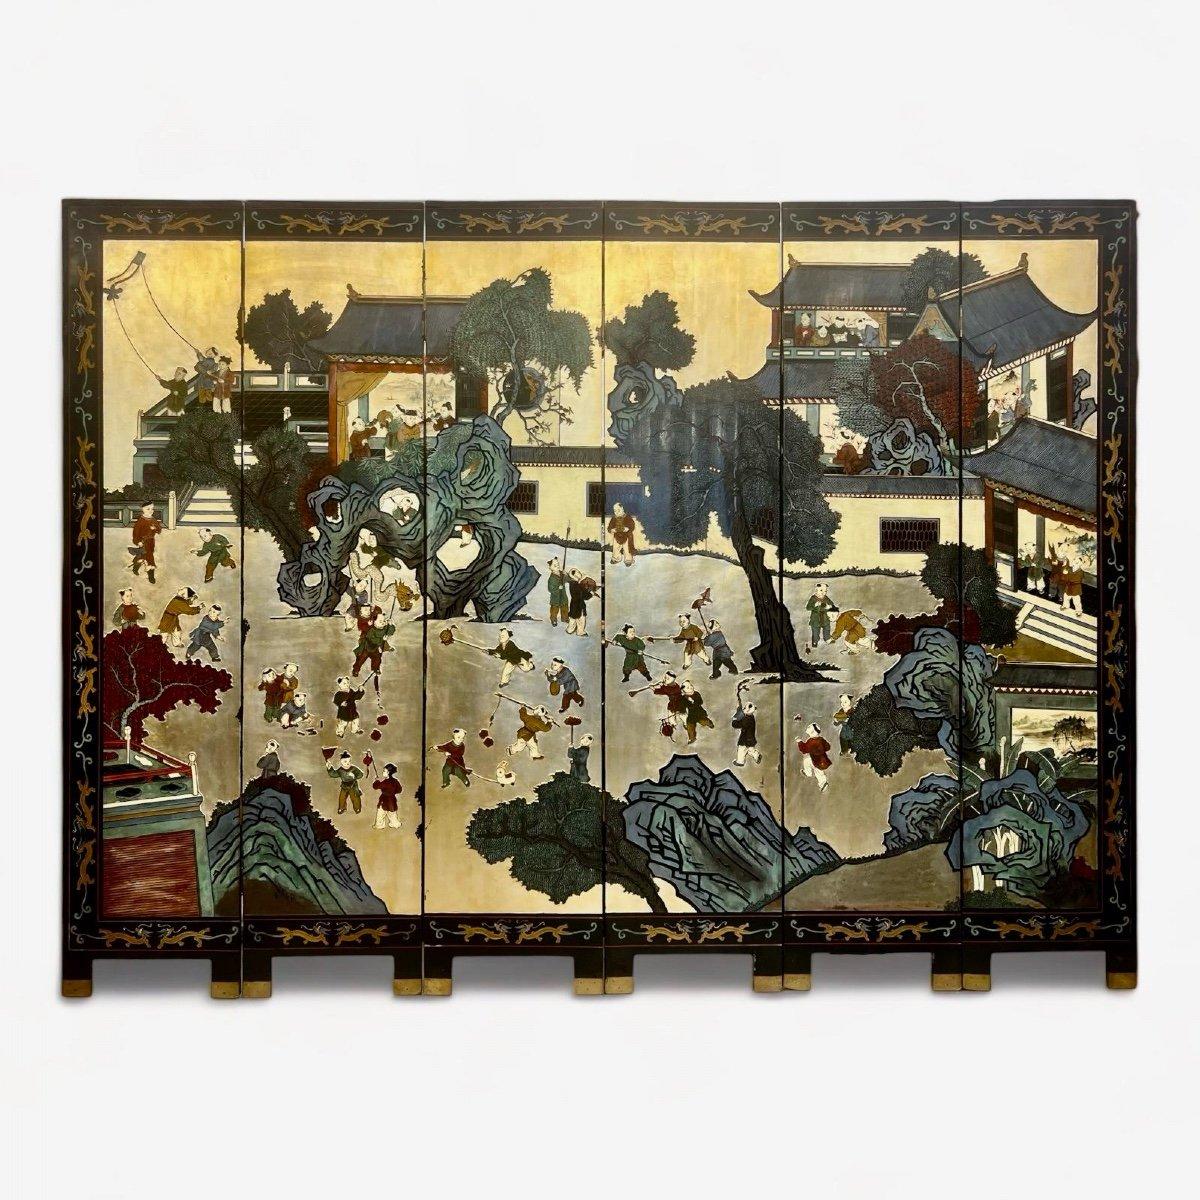 Dieser exquisite sechsfache Paravent aus chinesischem Koromandel-Lack aus dem frühen 20. Jahrhundert zeigt lebhafte Szenen von spielenden Kindern in einer traditionellen Dorflandschaft. Der Reichtum und die Fülle der Zeichen vor dem goldenen